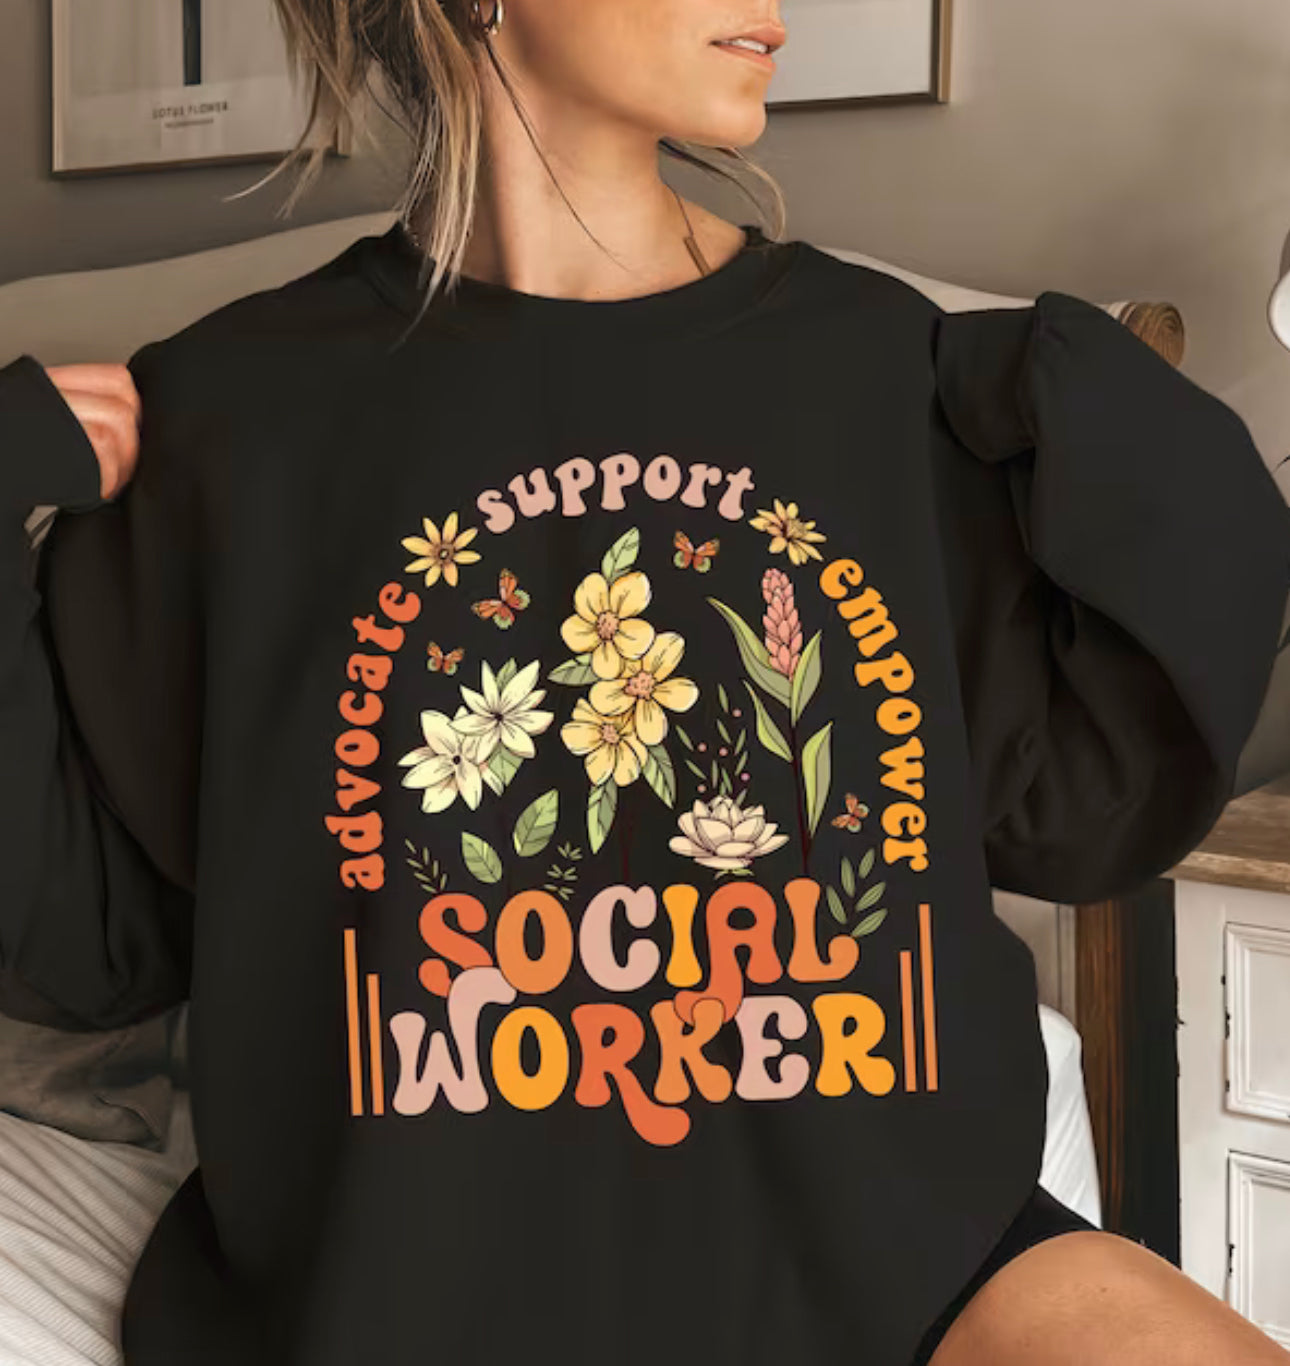 Social Worker Tee Or Crew